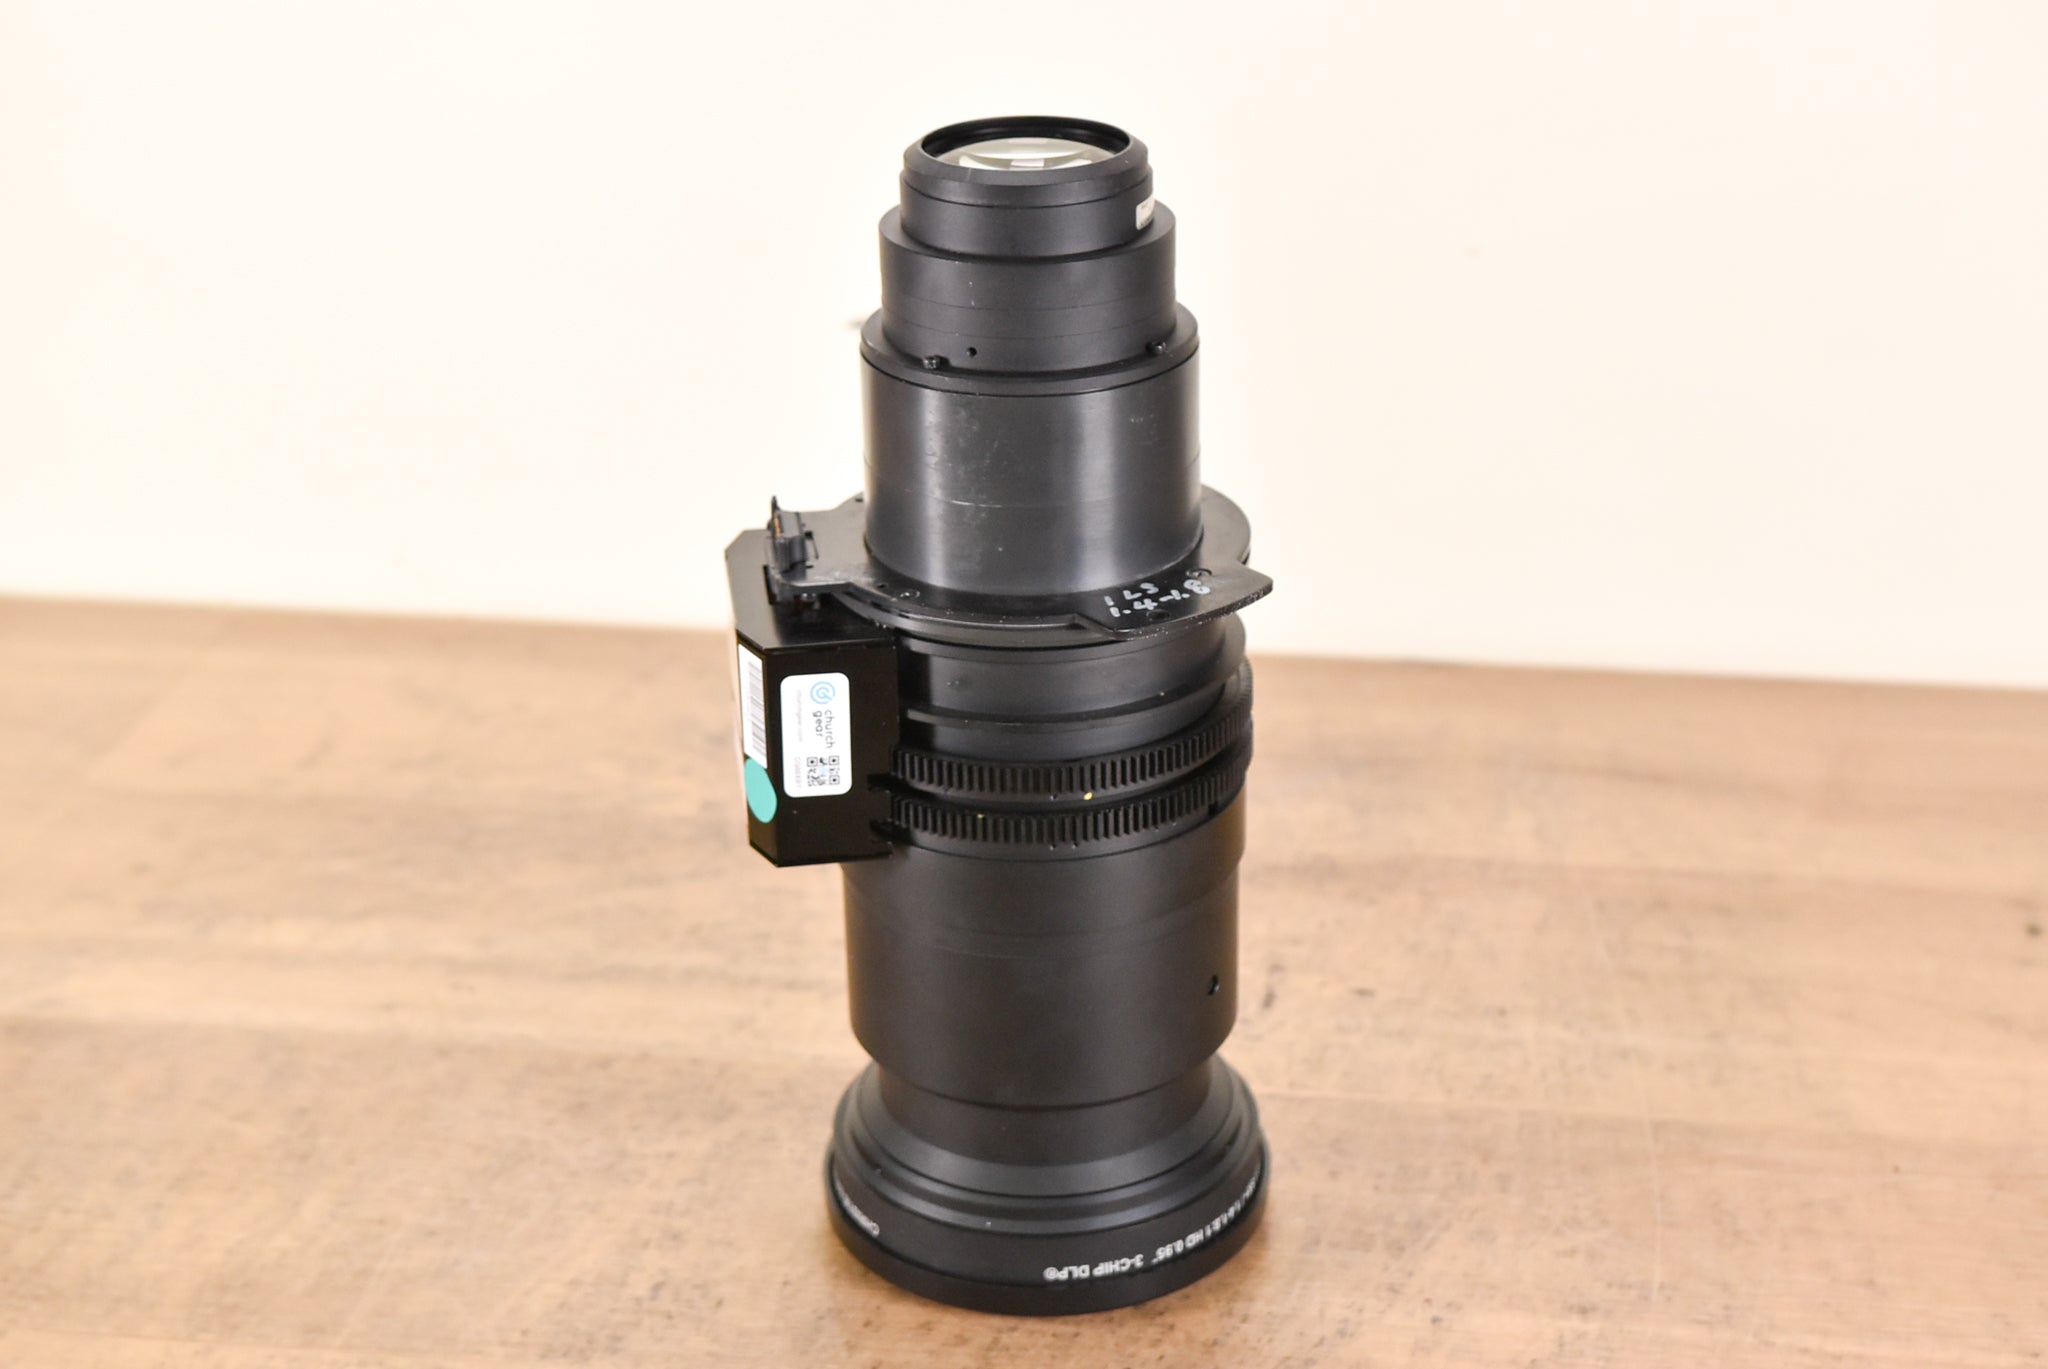 Christie ILS Lens 1.4-1.8:1 HD 0.95" 3-Chip DLP Projector Lens